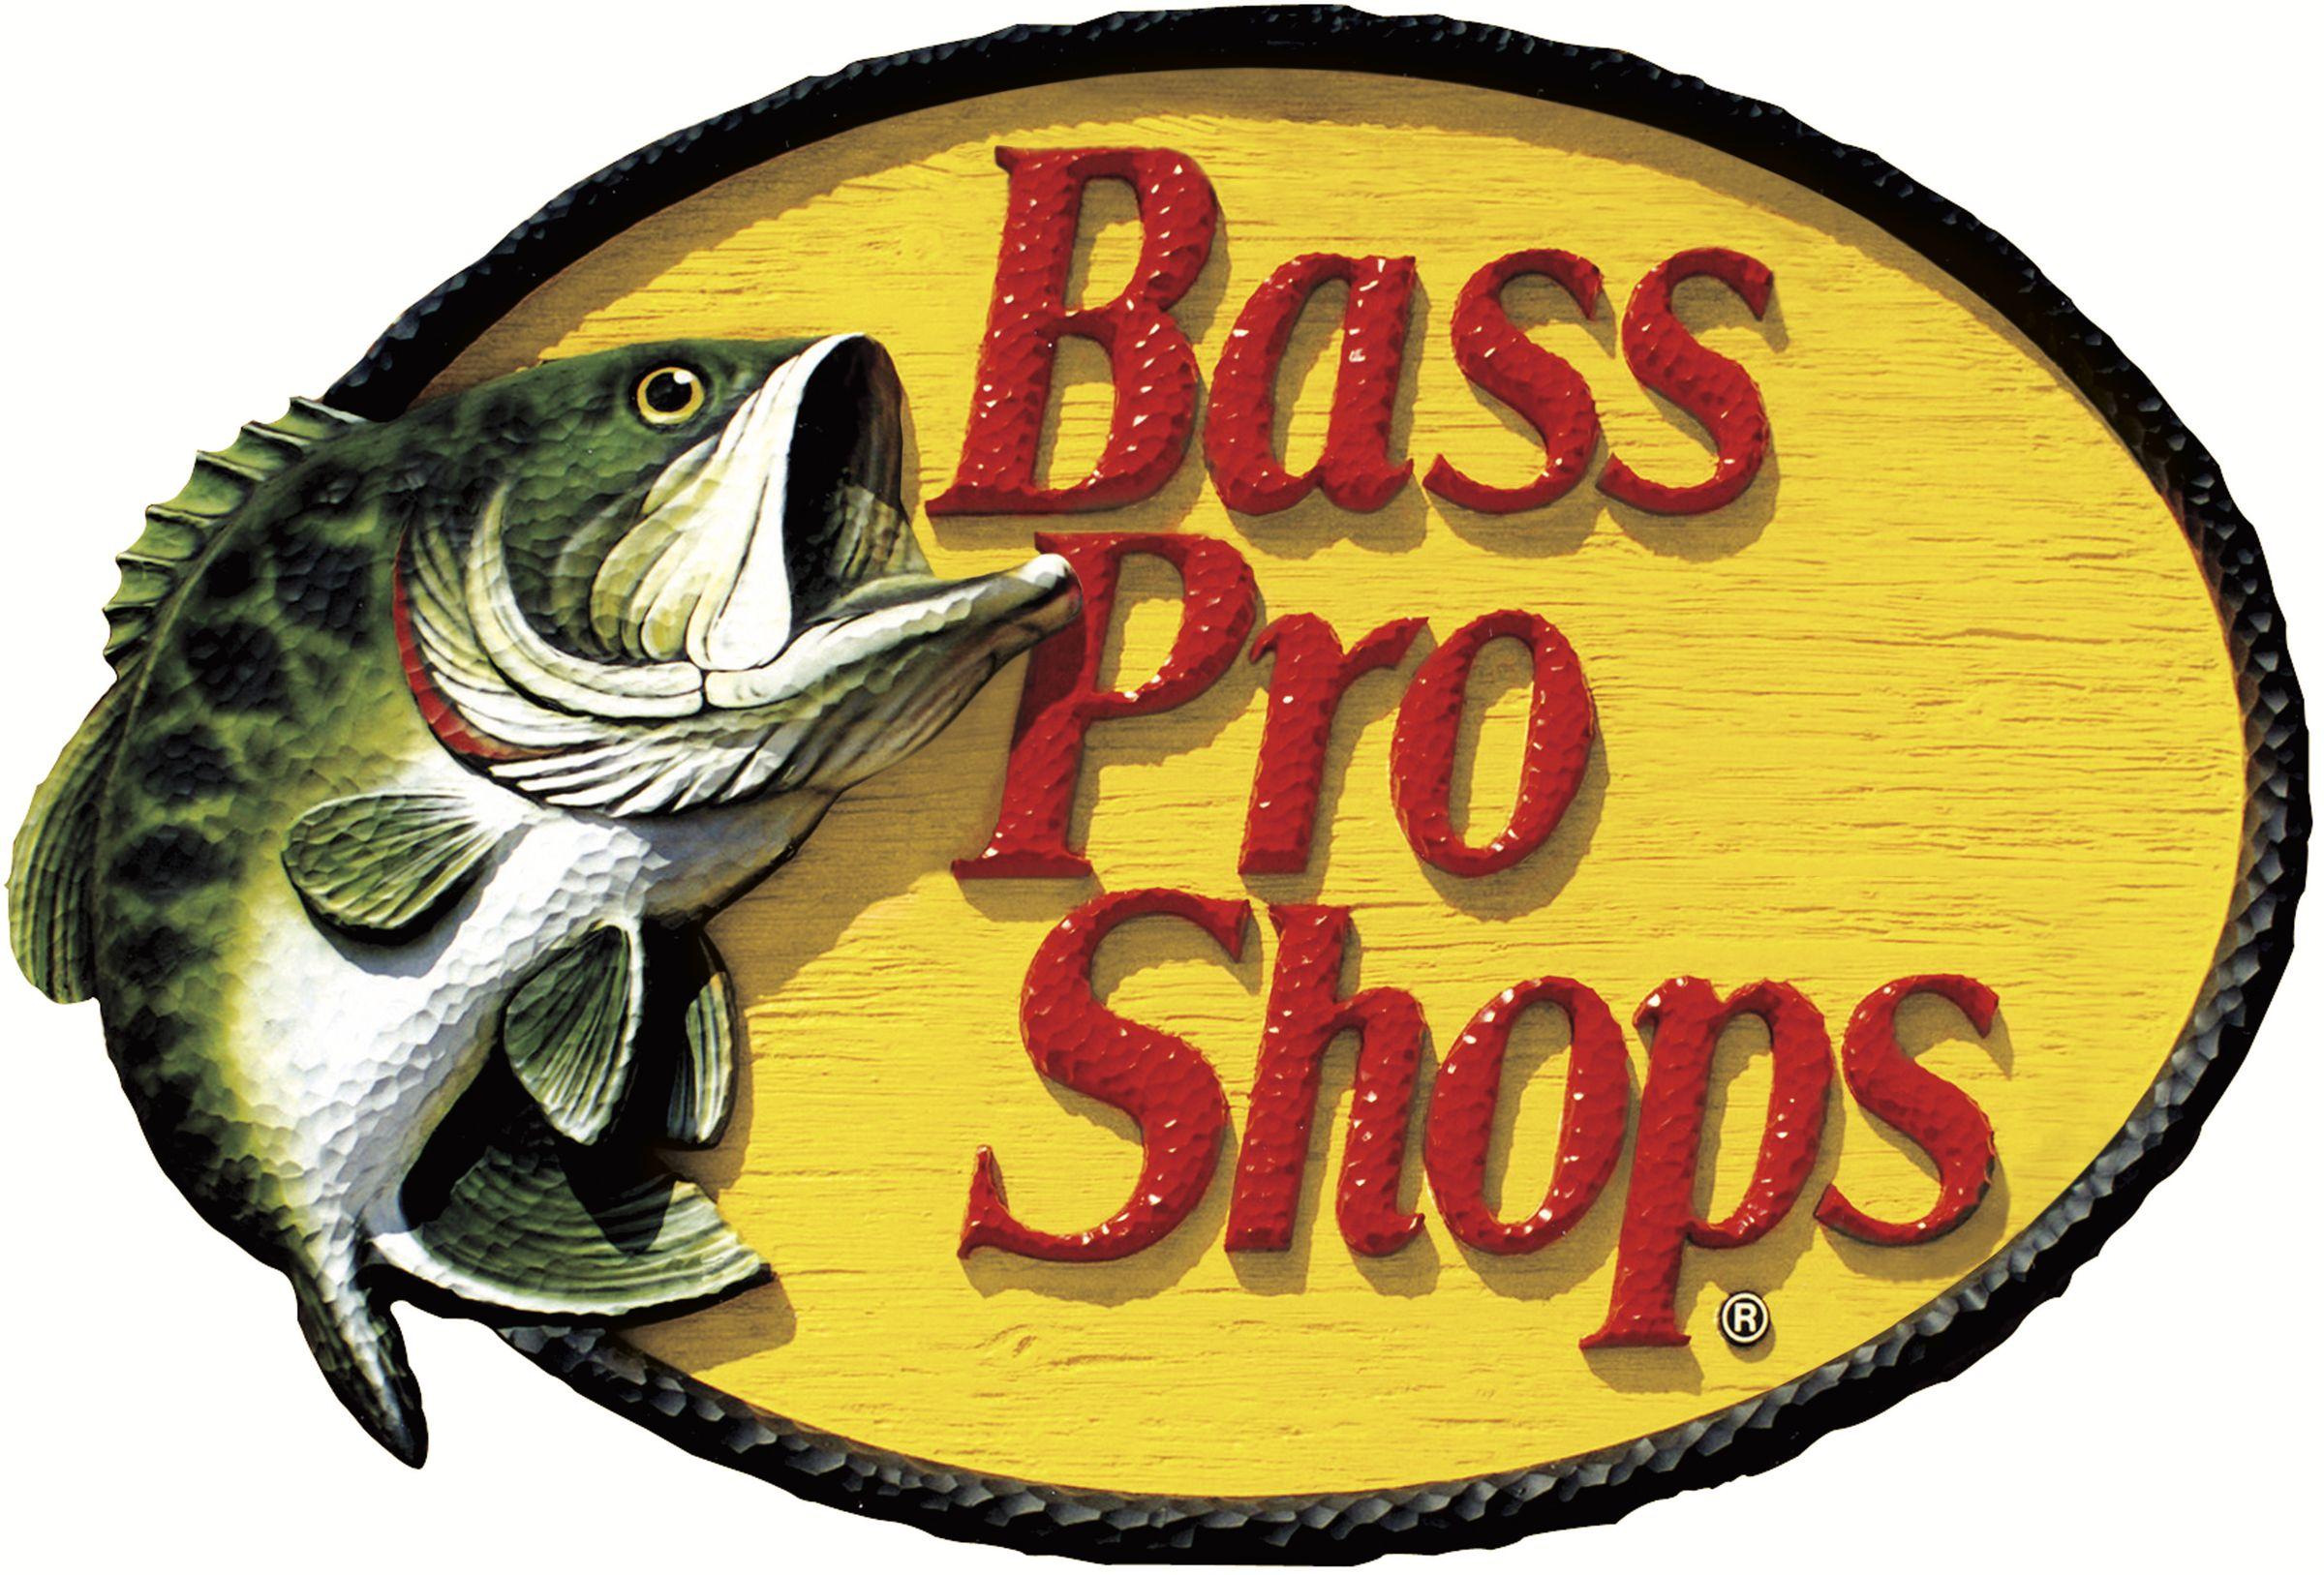 bass pro shop backgrounds